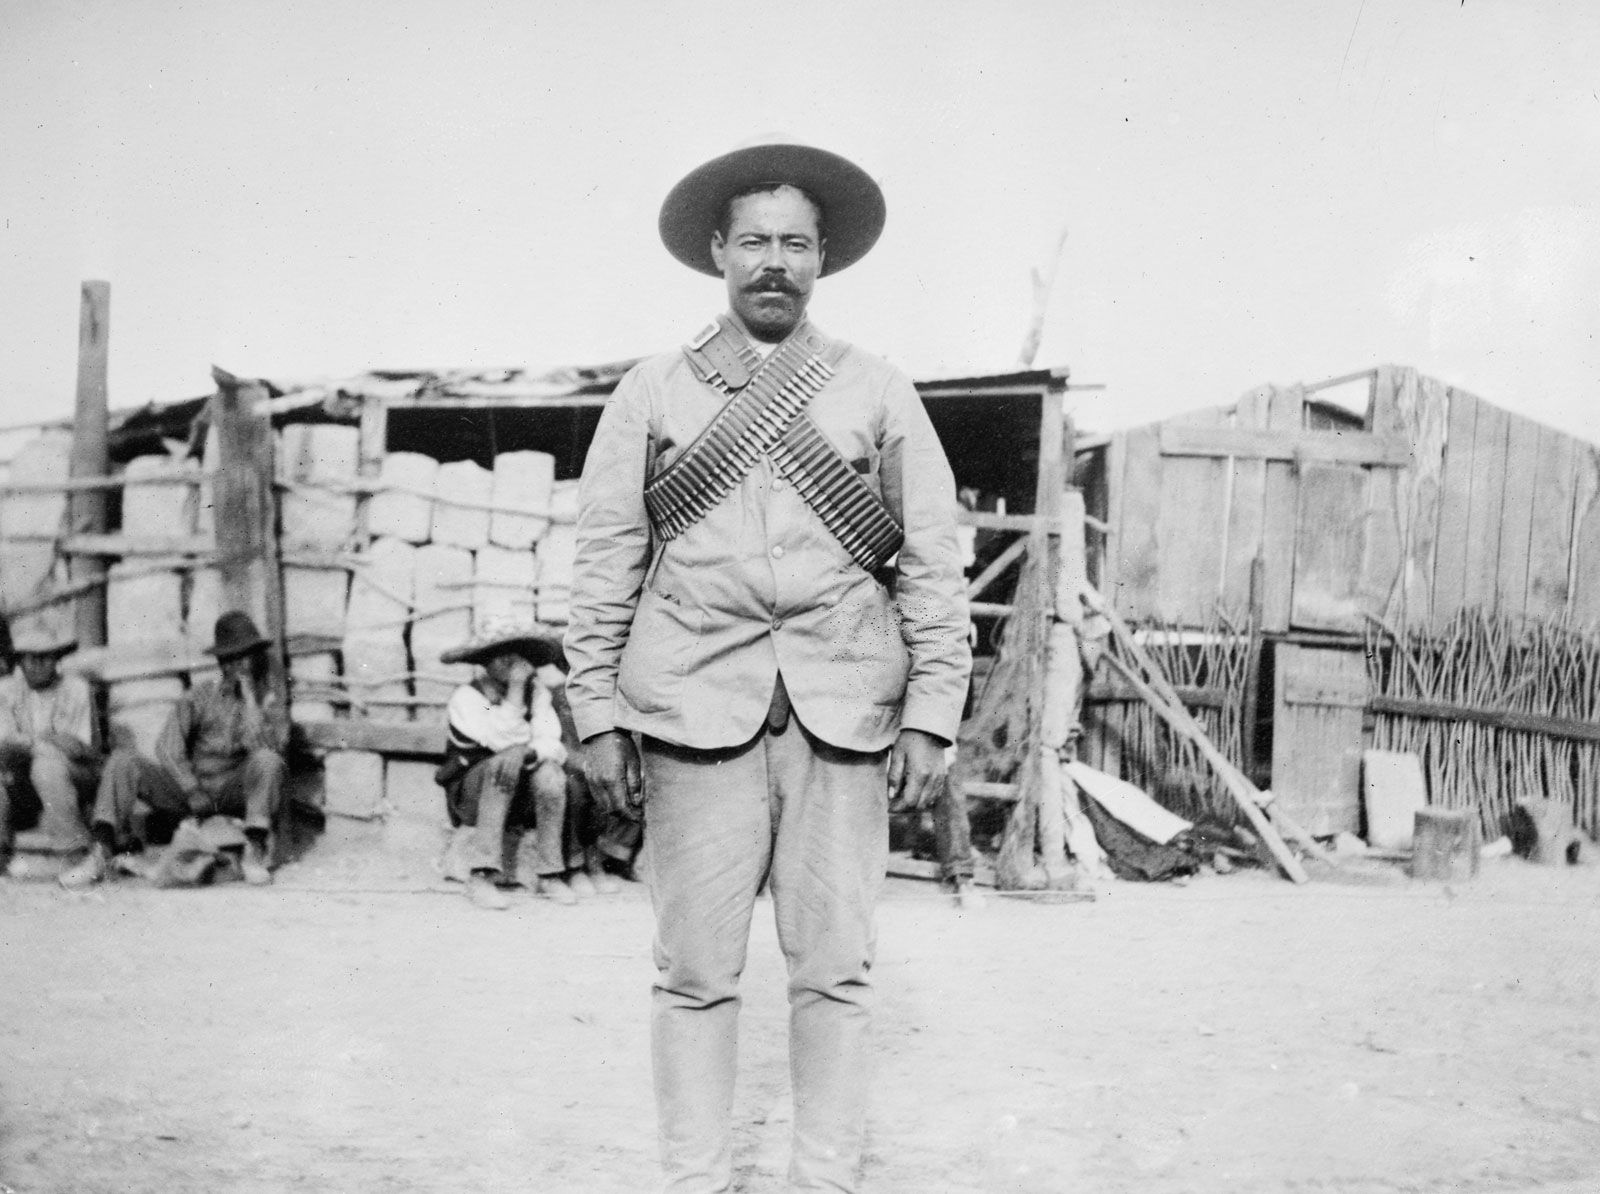  Biografi om Pancho Villa